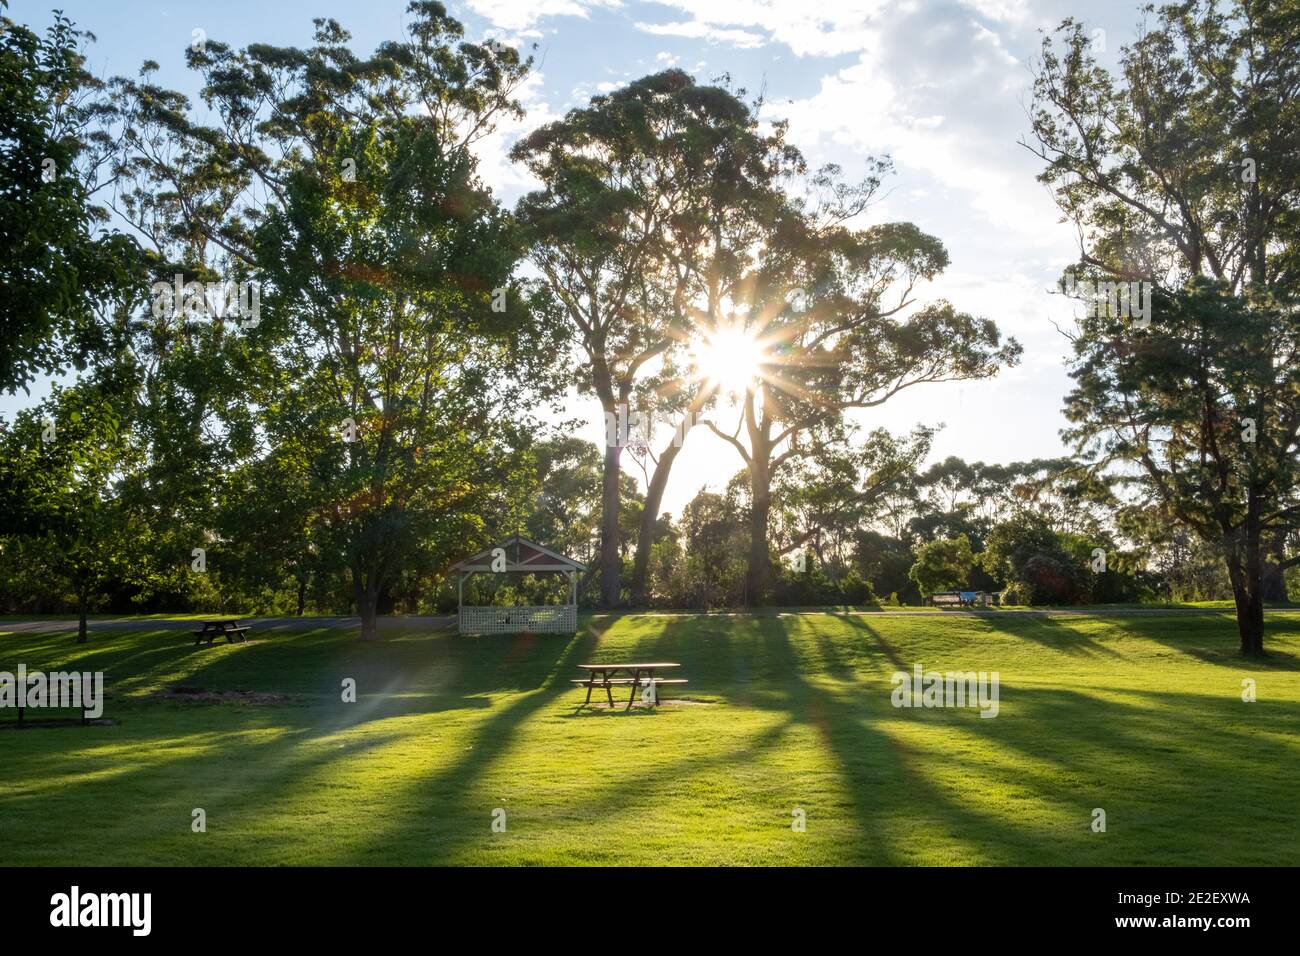 Le soleil à travers les arbres avec table de pique-nique et belvédère dans un beau jardin. Orvost, Victoria, Australie Banque D'Images